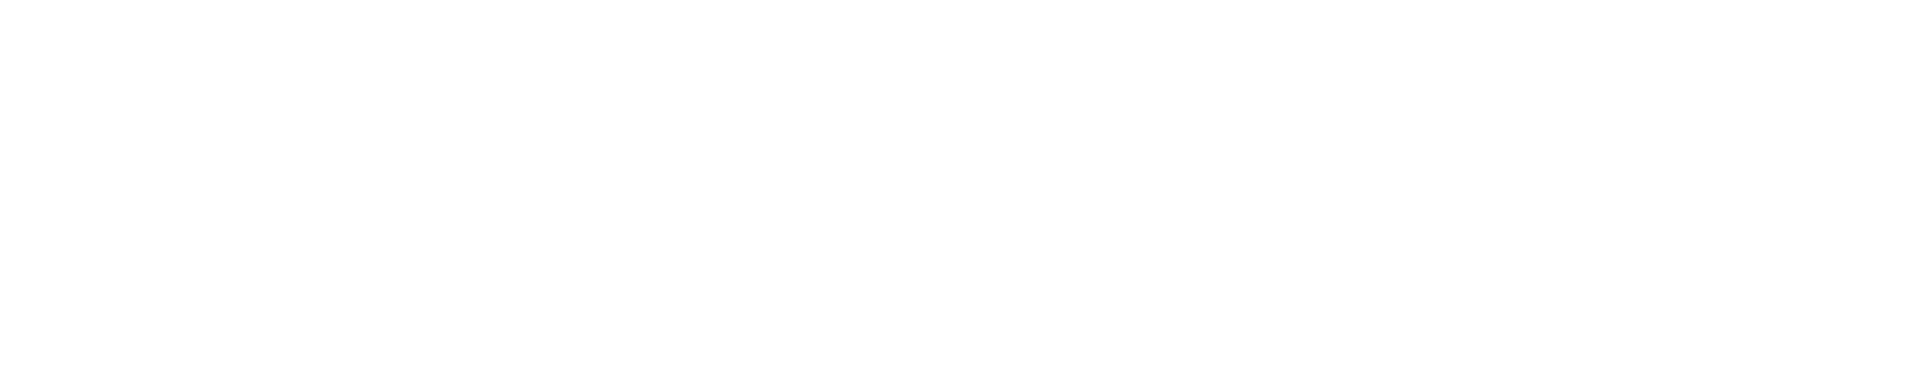 typo-logo